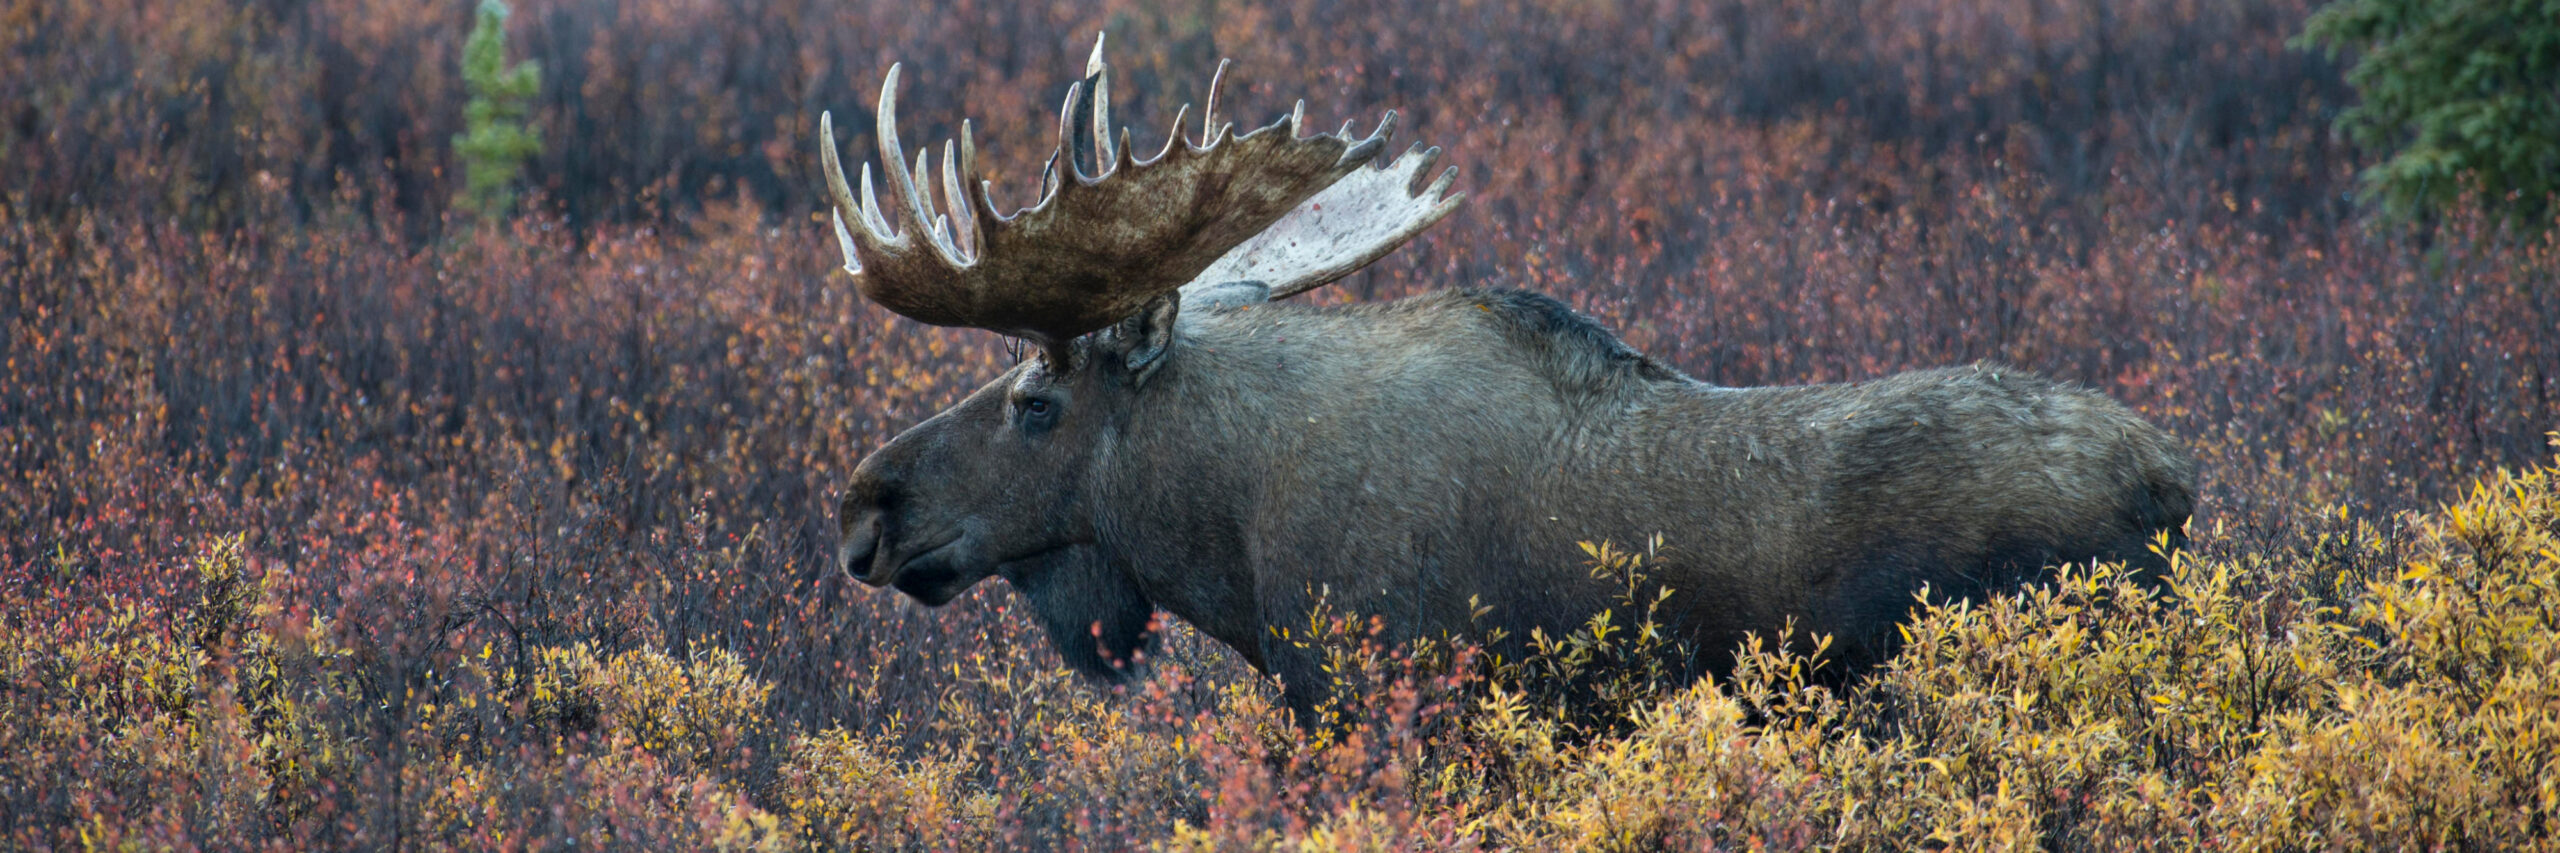 chukotka-moose